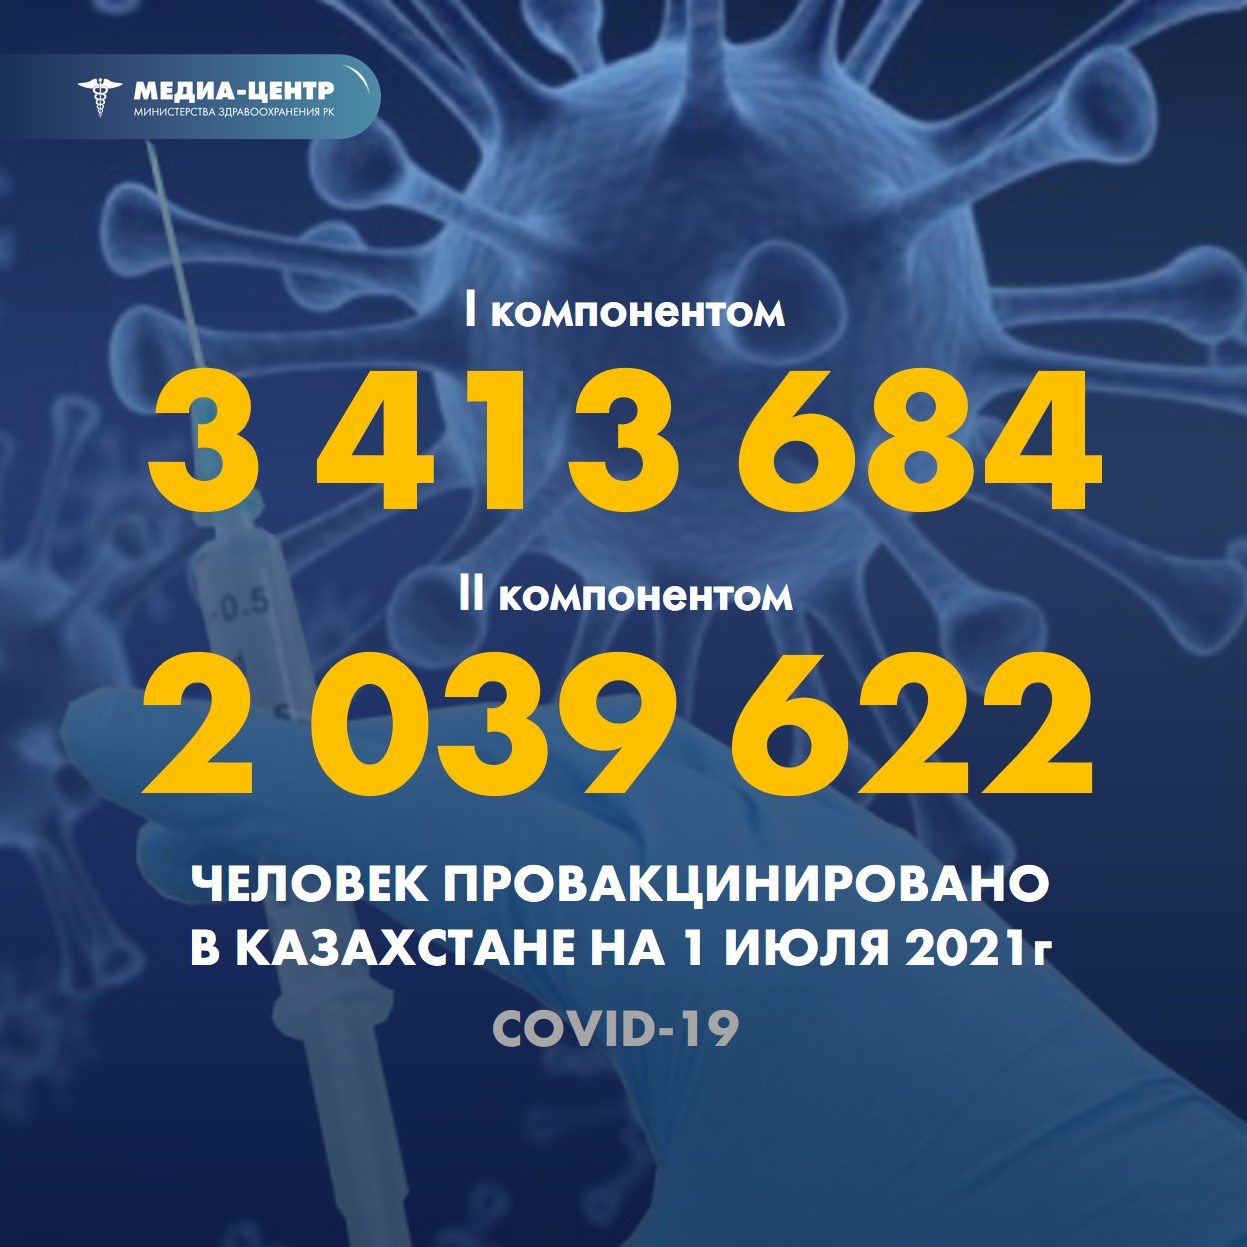 Информация о проведении вакцинации населения против КВИ на 1.07.2021 г. в разрезе регионов